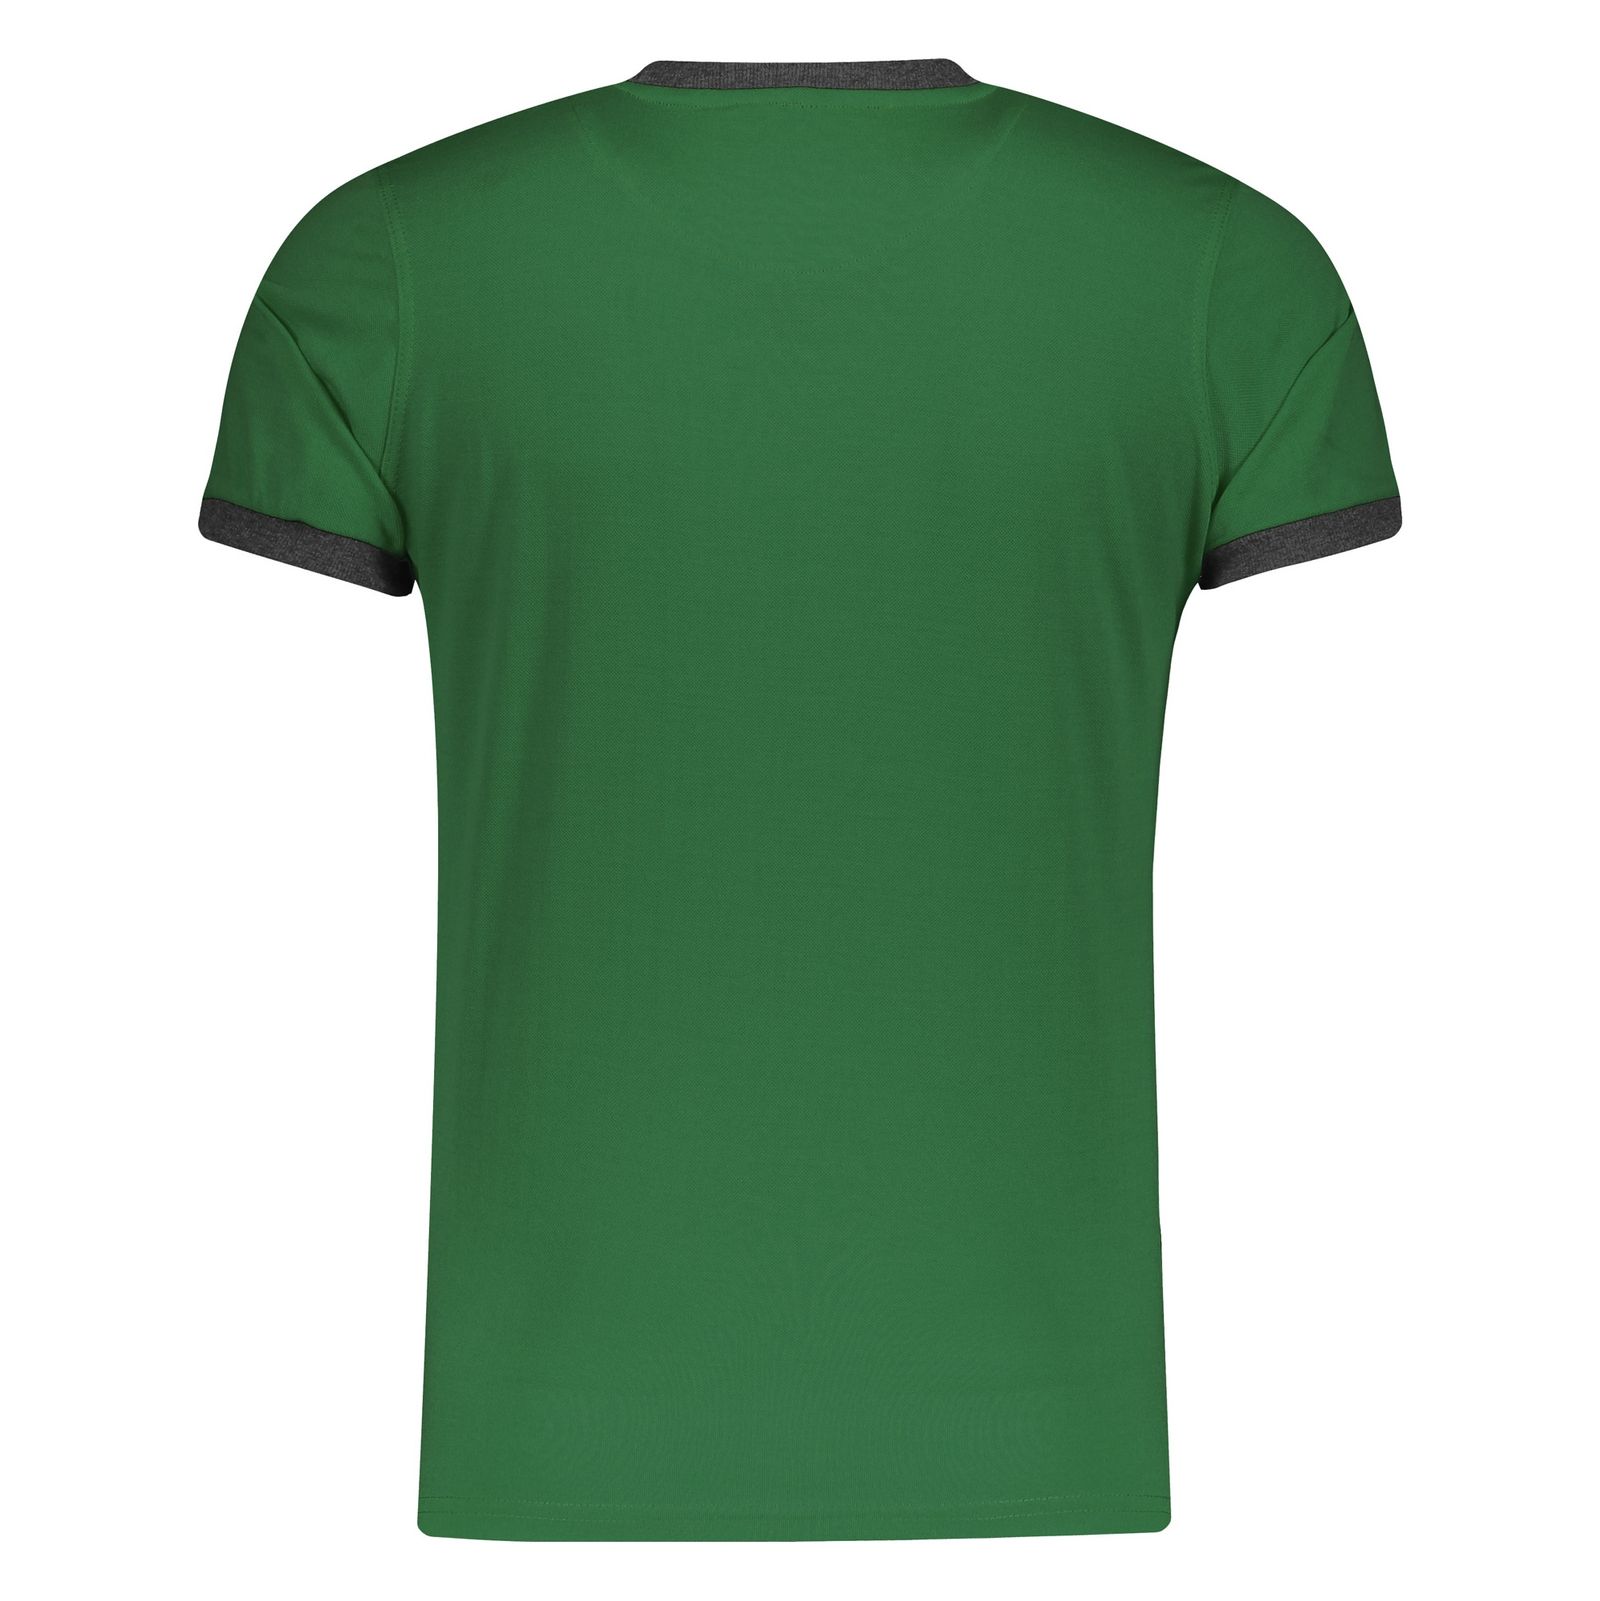 تی شرت ورزشی مردانه بی فور ران مدل 980311-44 - سبز - 3